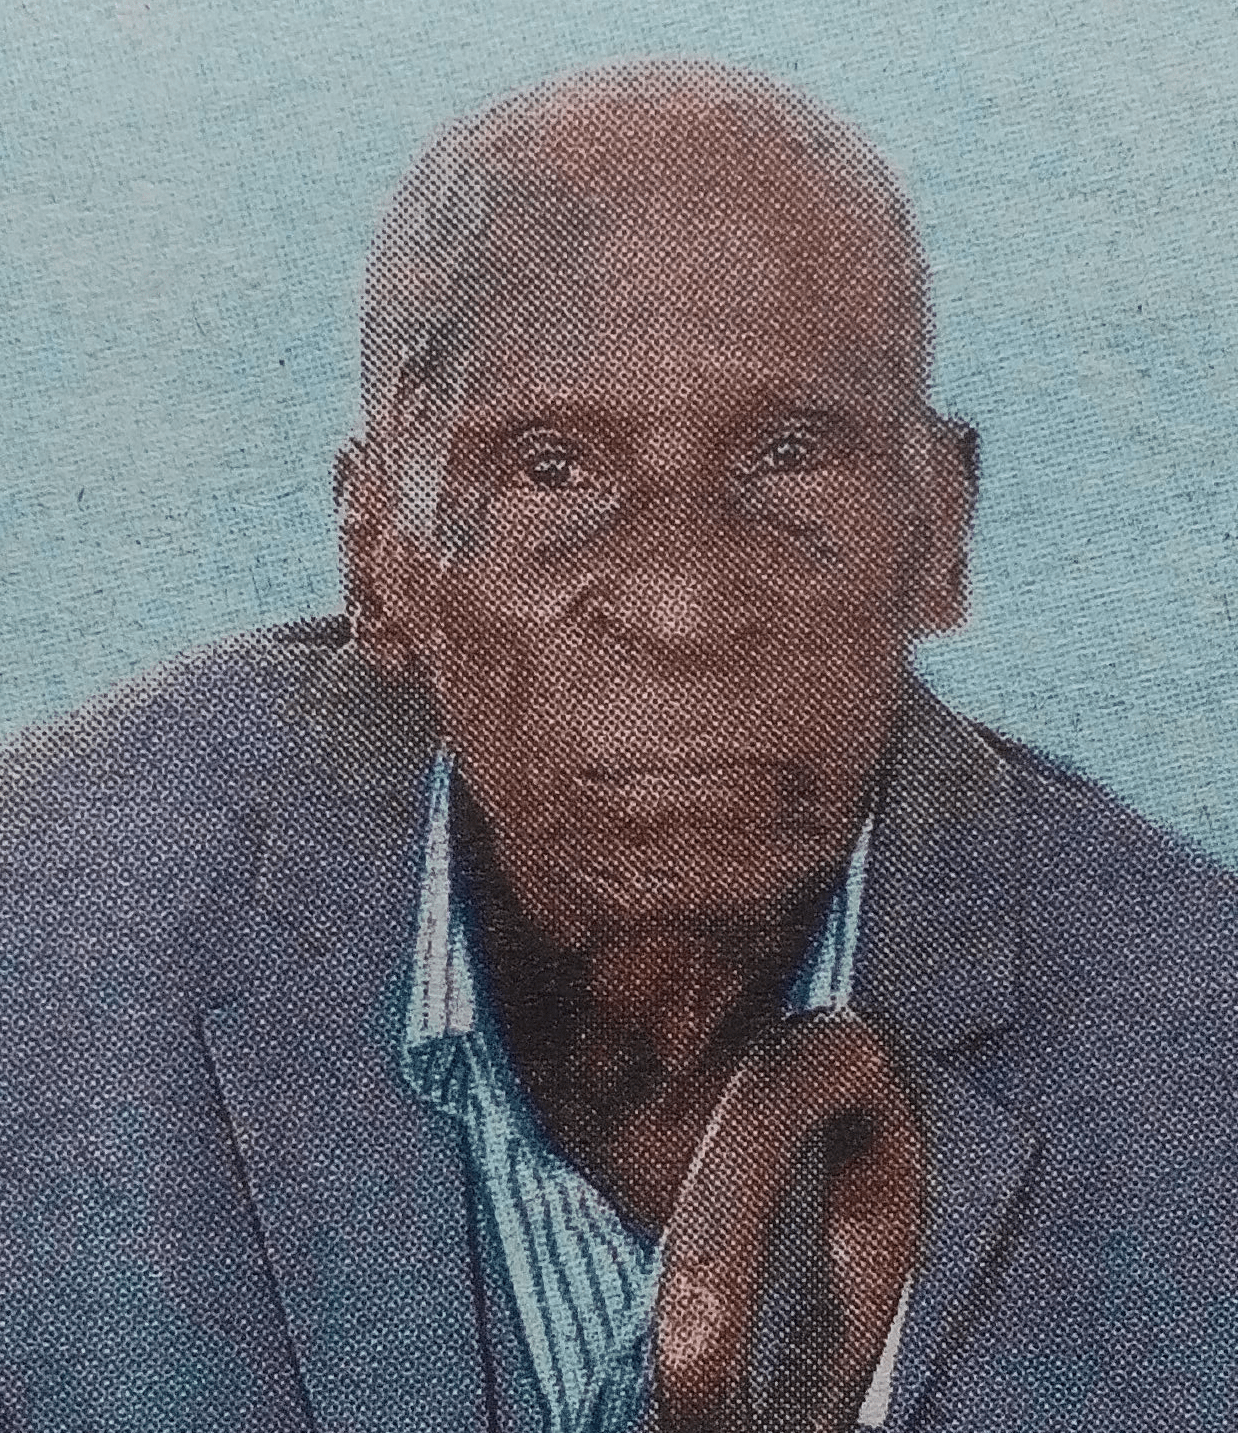 Obituary Image of Dedan Karuga Gichinga